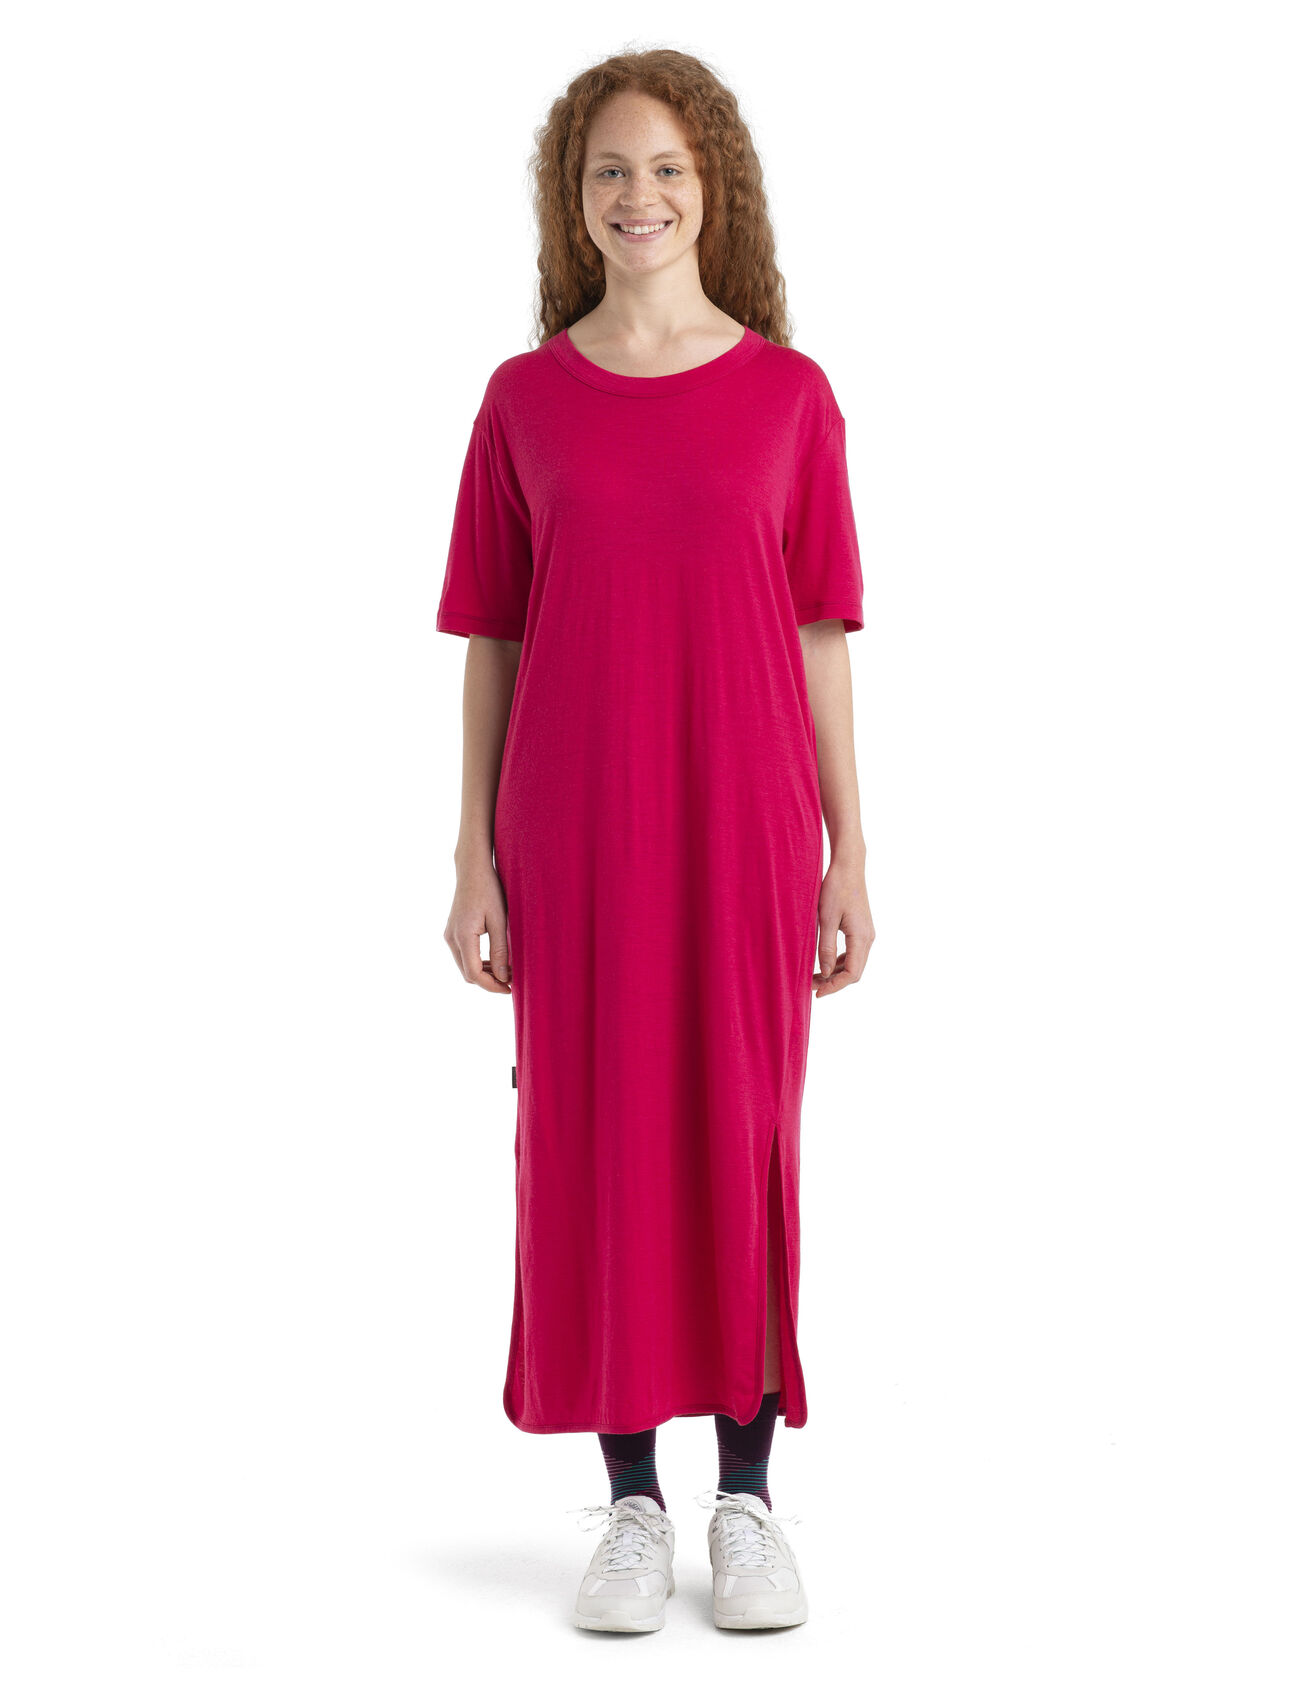 Robe Granary en mérinos Femmes Élégante et parfaite pour la détente ou les excursions décontractées, la robe t-shirt Granary est faite en laine mérinos douce et respirante pour le confort et le style. 